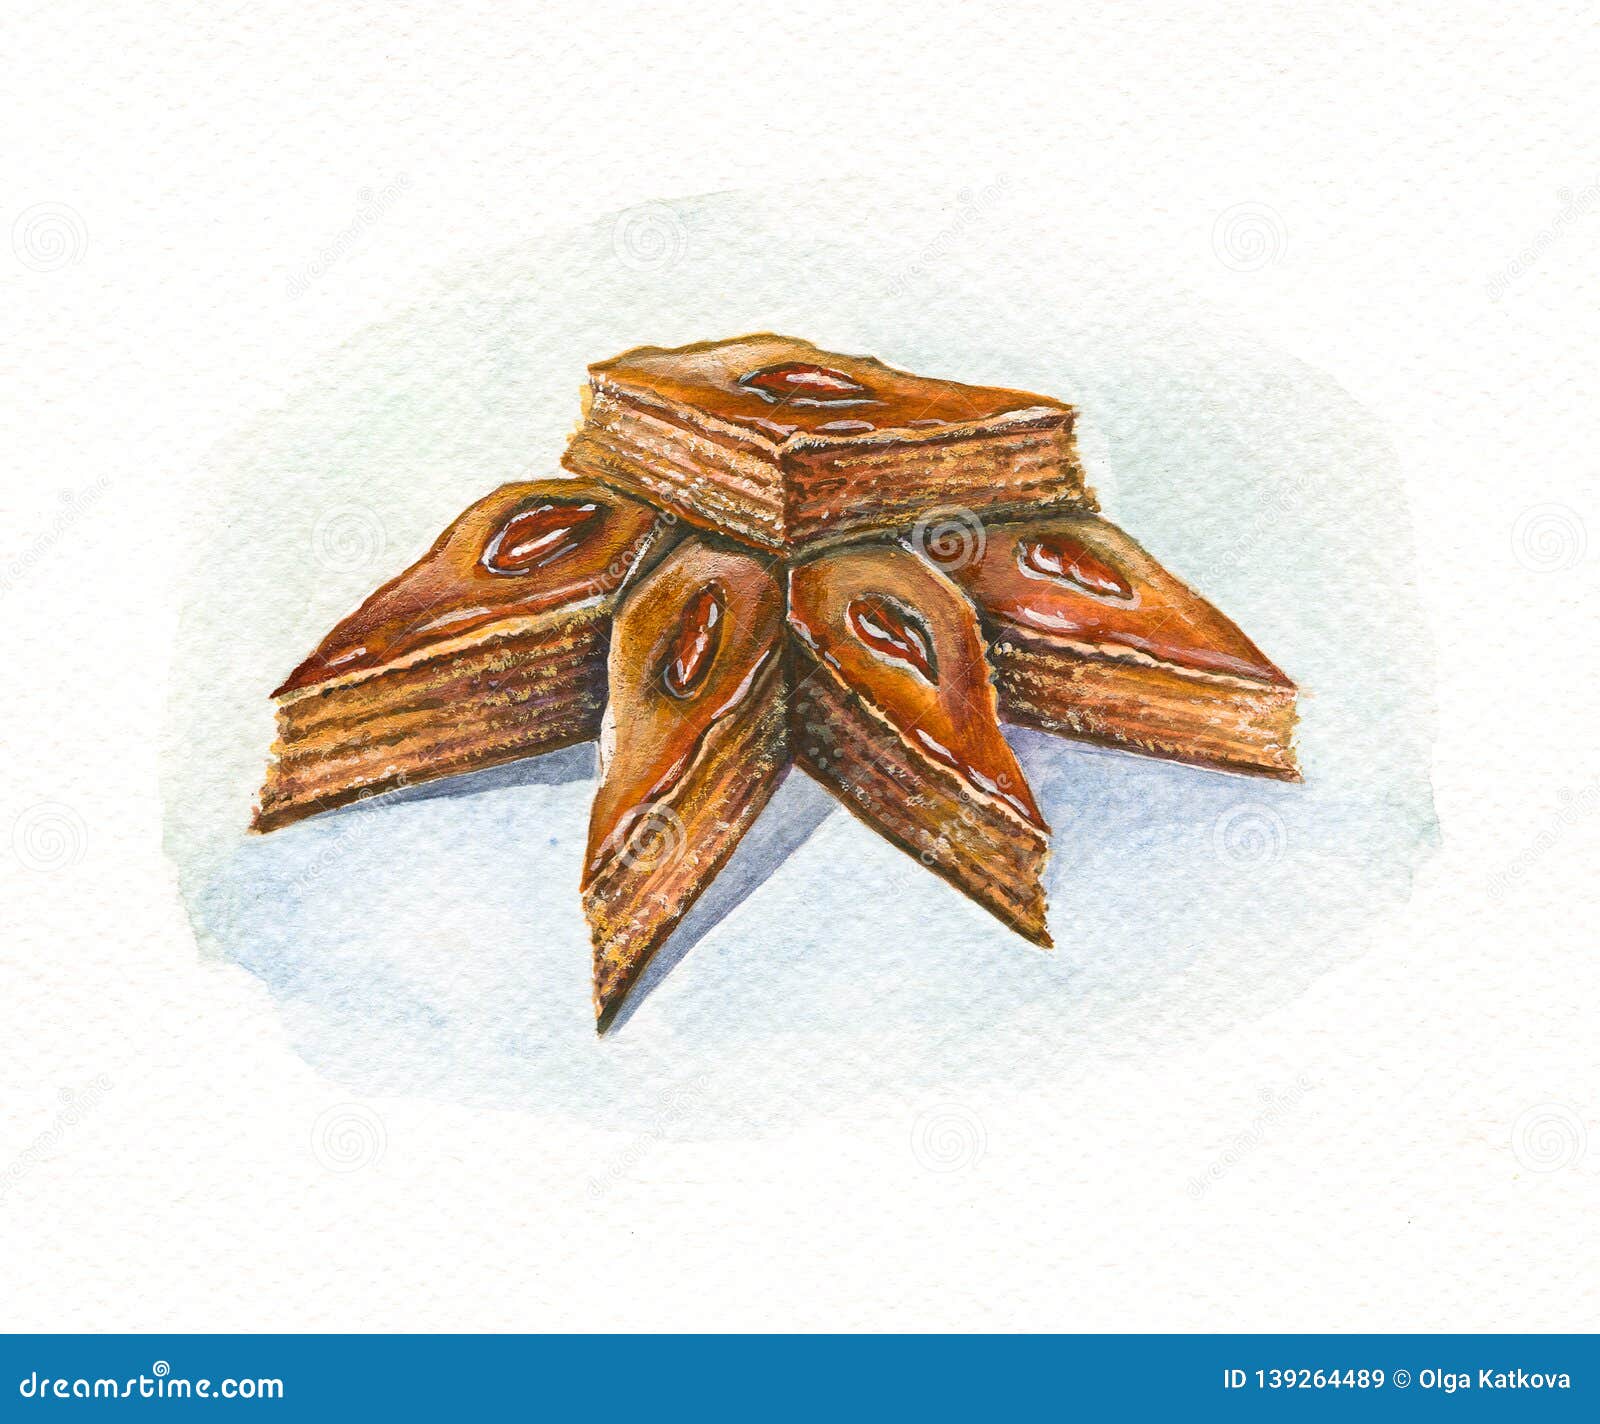 Aquarelle de dessert d'Orienta de baklava. Peinture d'aquarelle de la baklava délicieuse de dessert d'Ouzbékistan de bonbons turcs orientaux à tartre peinte au-dessus du papier rugueux texturisé blanc